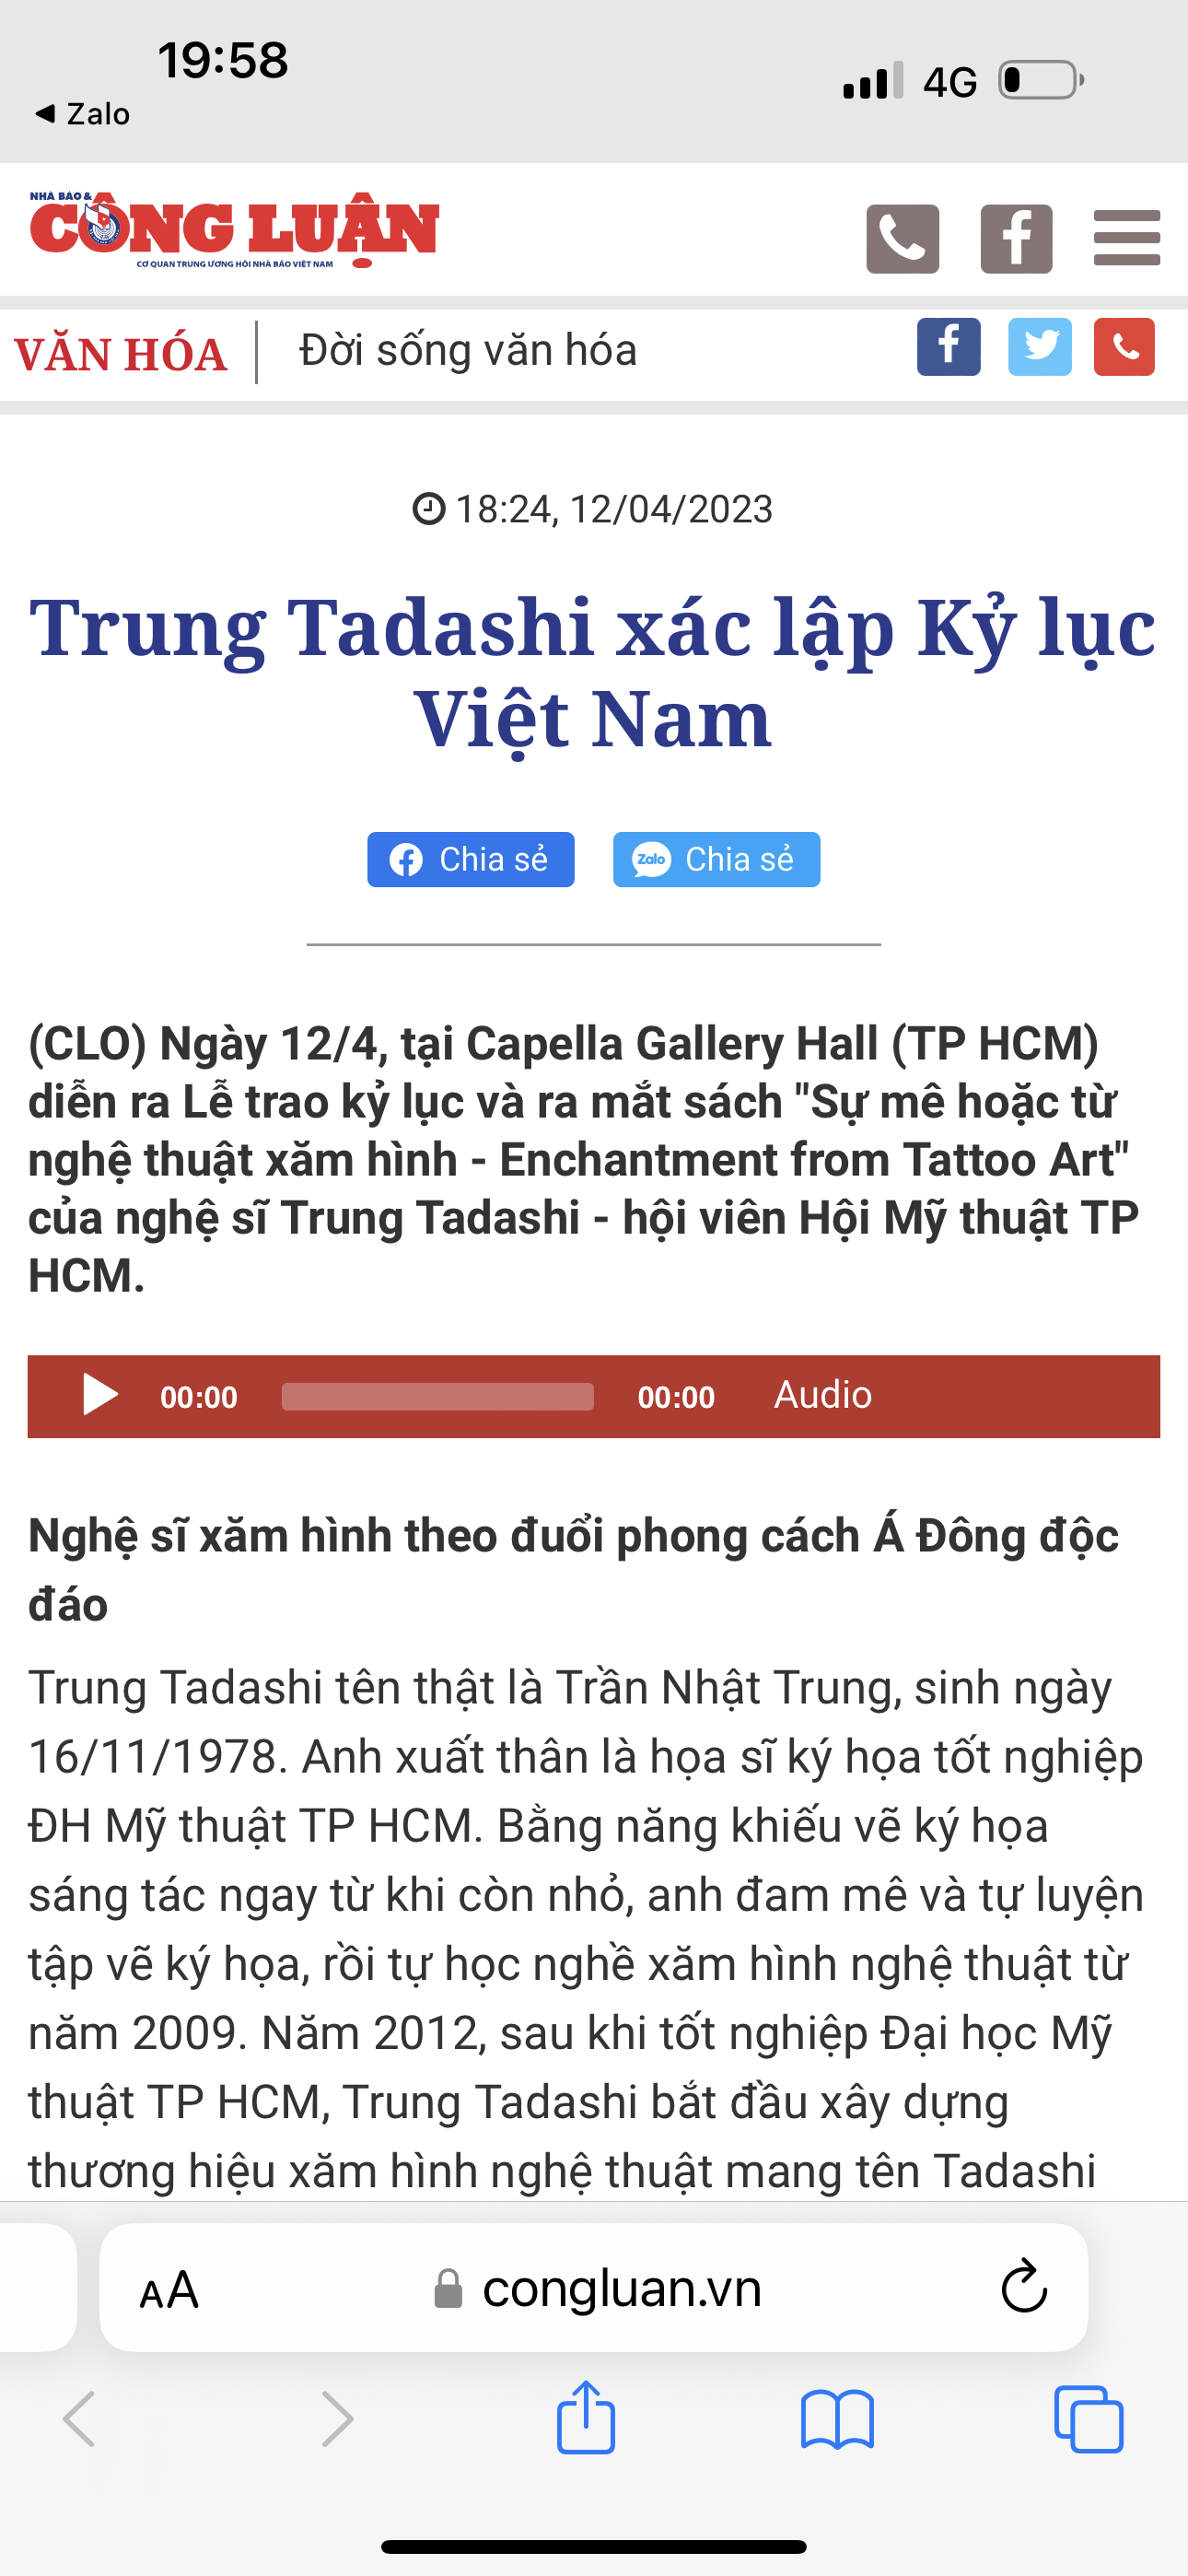 Cong Luan online newspaper